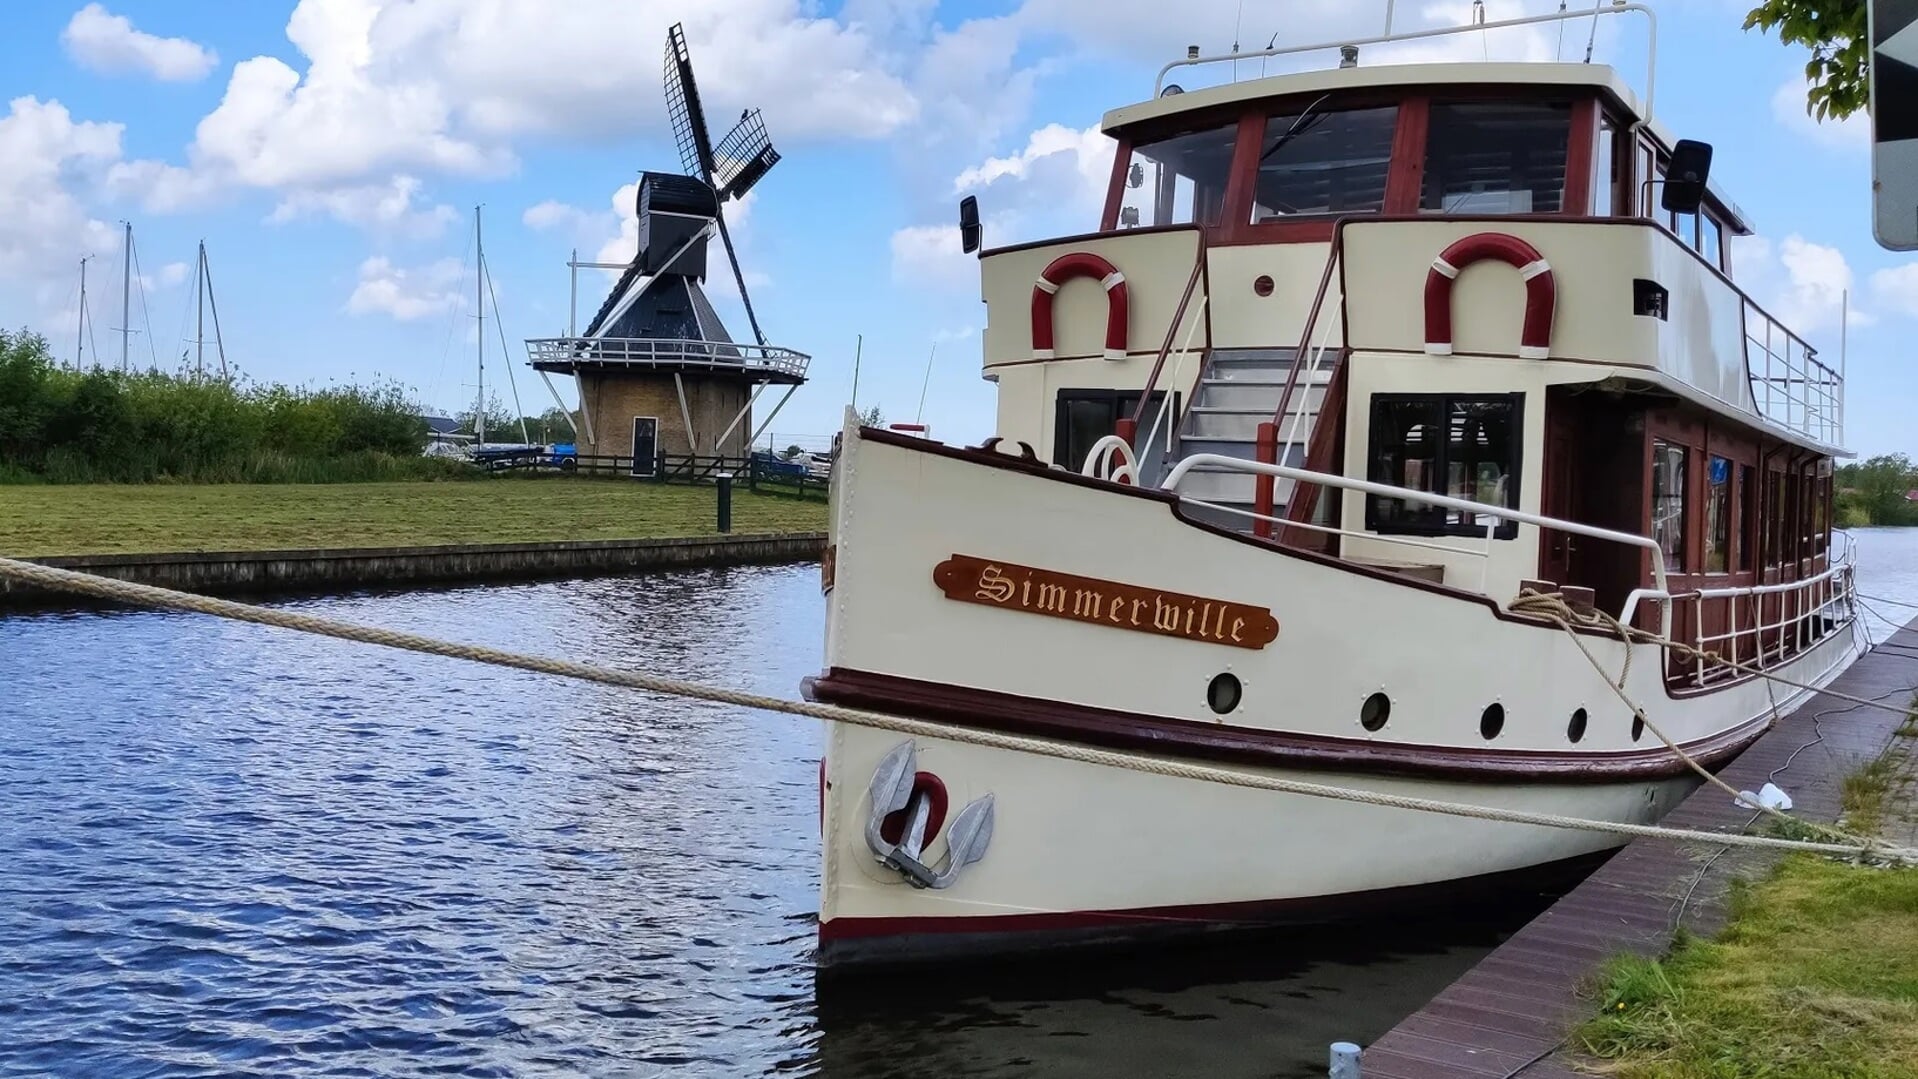 Rondvaartboot 'Simmerwille' behouden voor Joure: “Het schip vaart binnenkort weer over de Friese Meren”